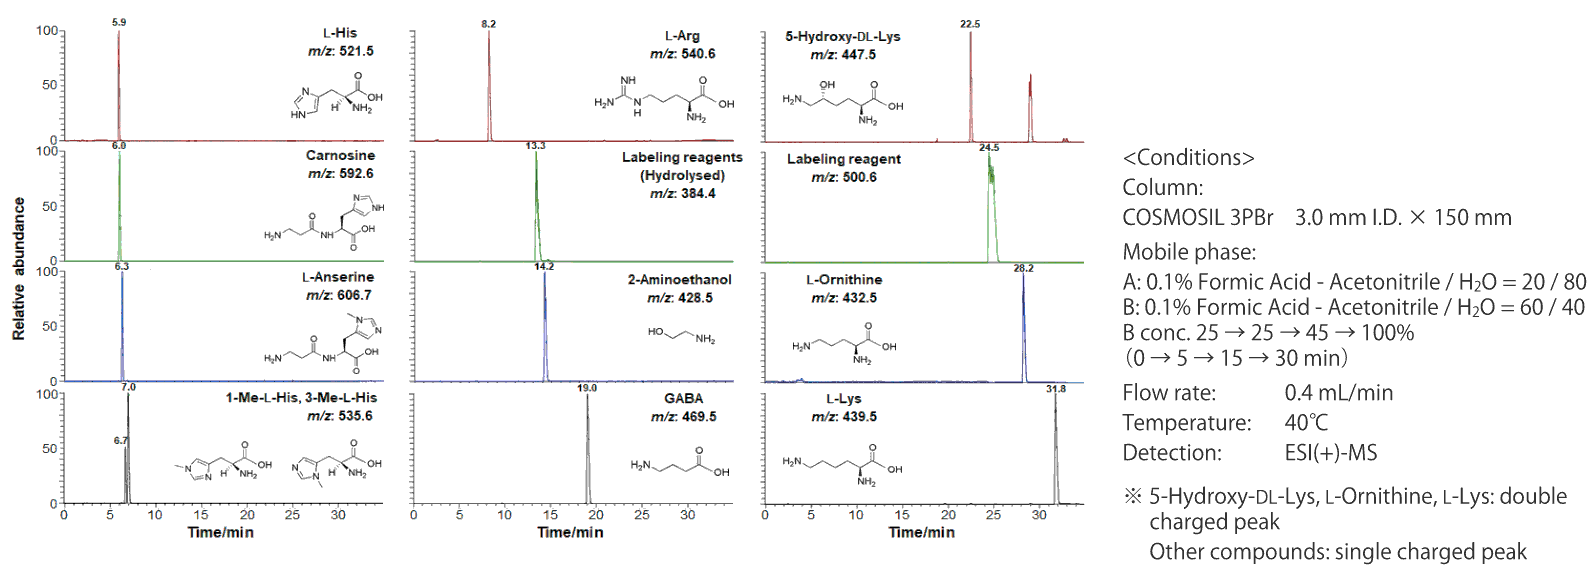 chromatogram of basic compounds